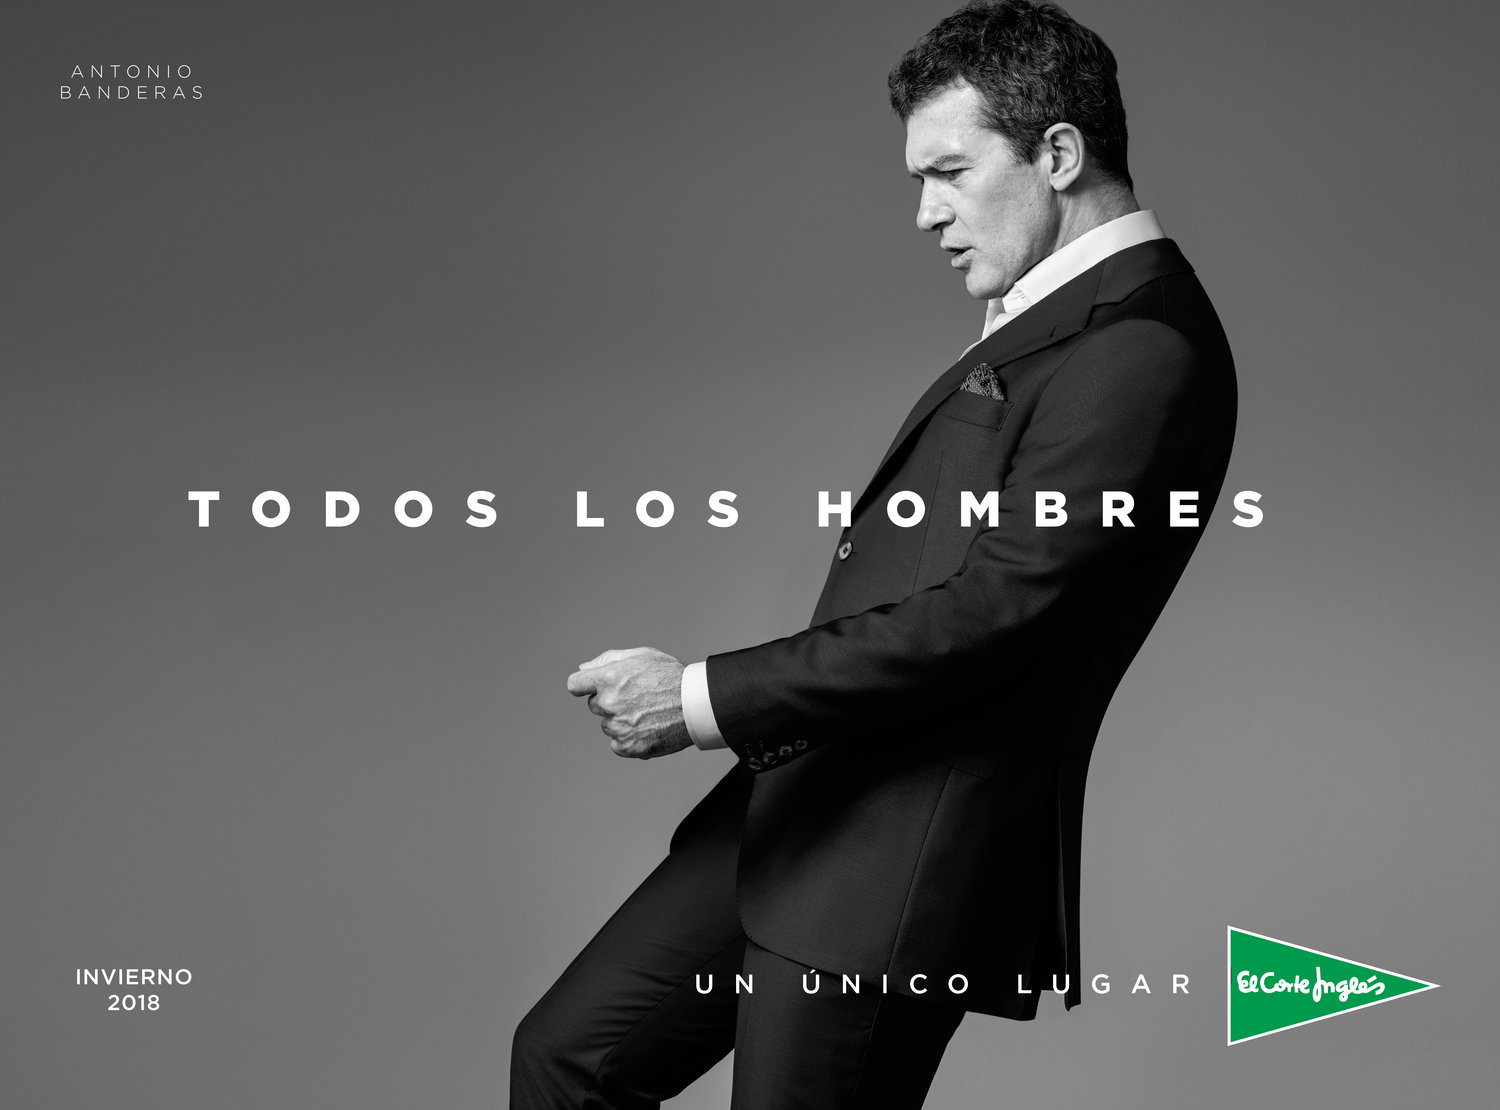 Campaña publicitaria para el Corte Inglés, protagonizada por Antonio Banderas, elaborada por Enri Mür y Zapping, junto a Frederico Martins.